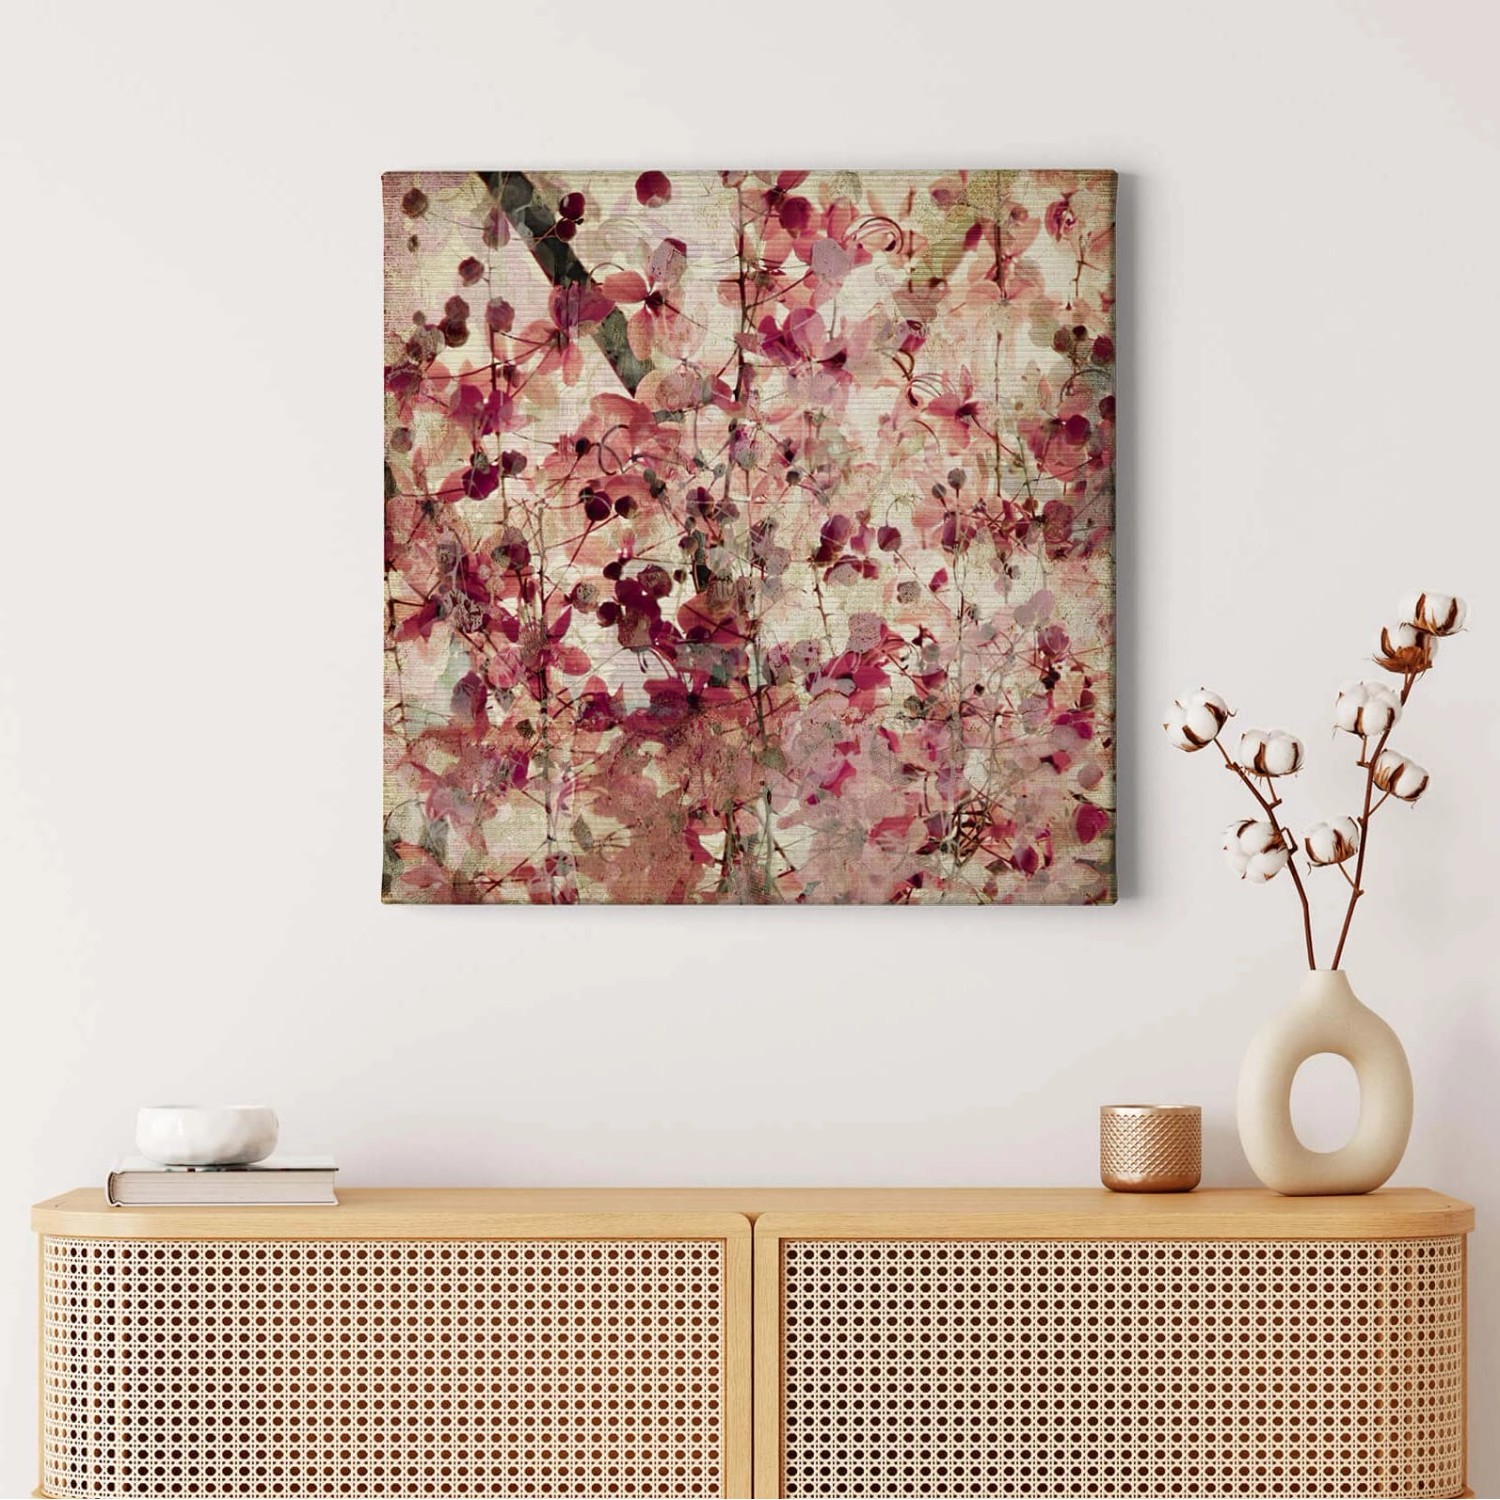 Bricoflor Blumen Bild Im Vintage Stil Altrosa Leinwand Bild Mit Blüten Im Kunst Stil Rosa Wandbild Ideal Für Schlafzimme